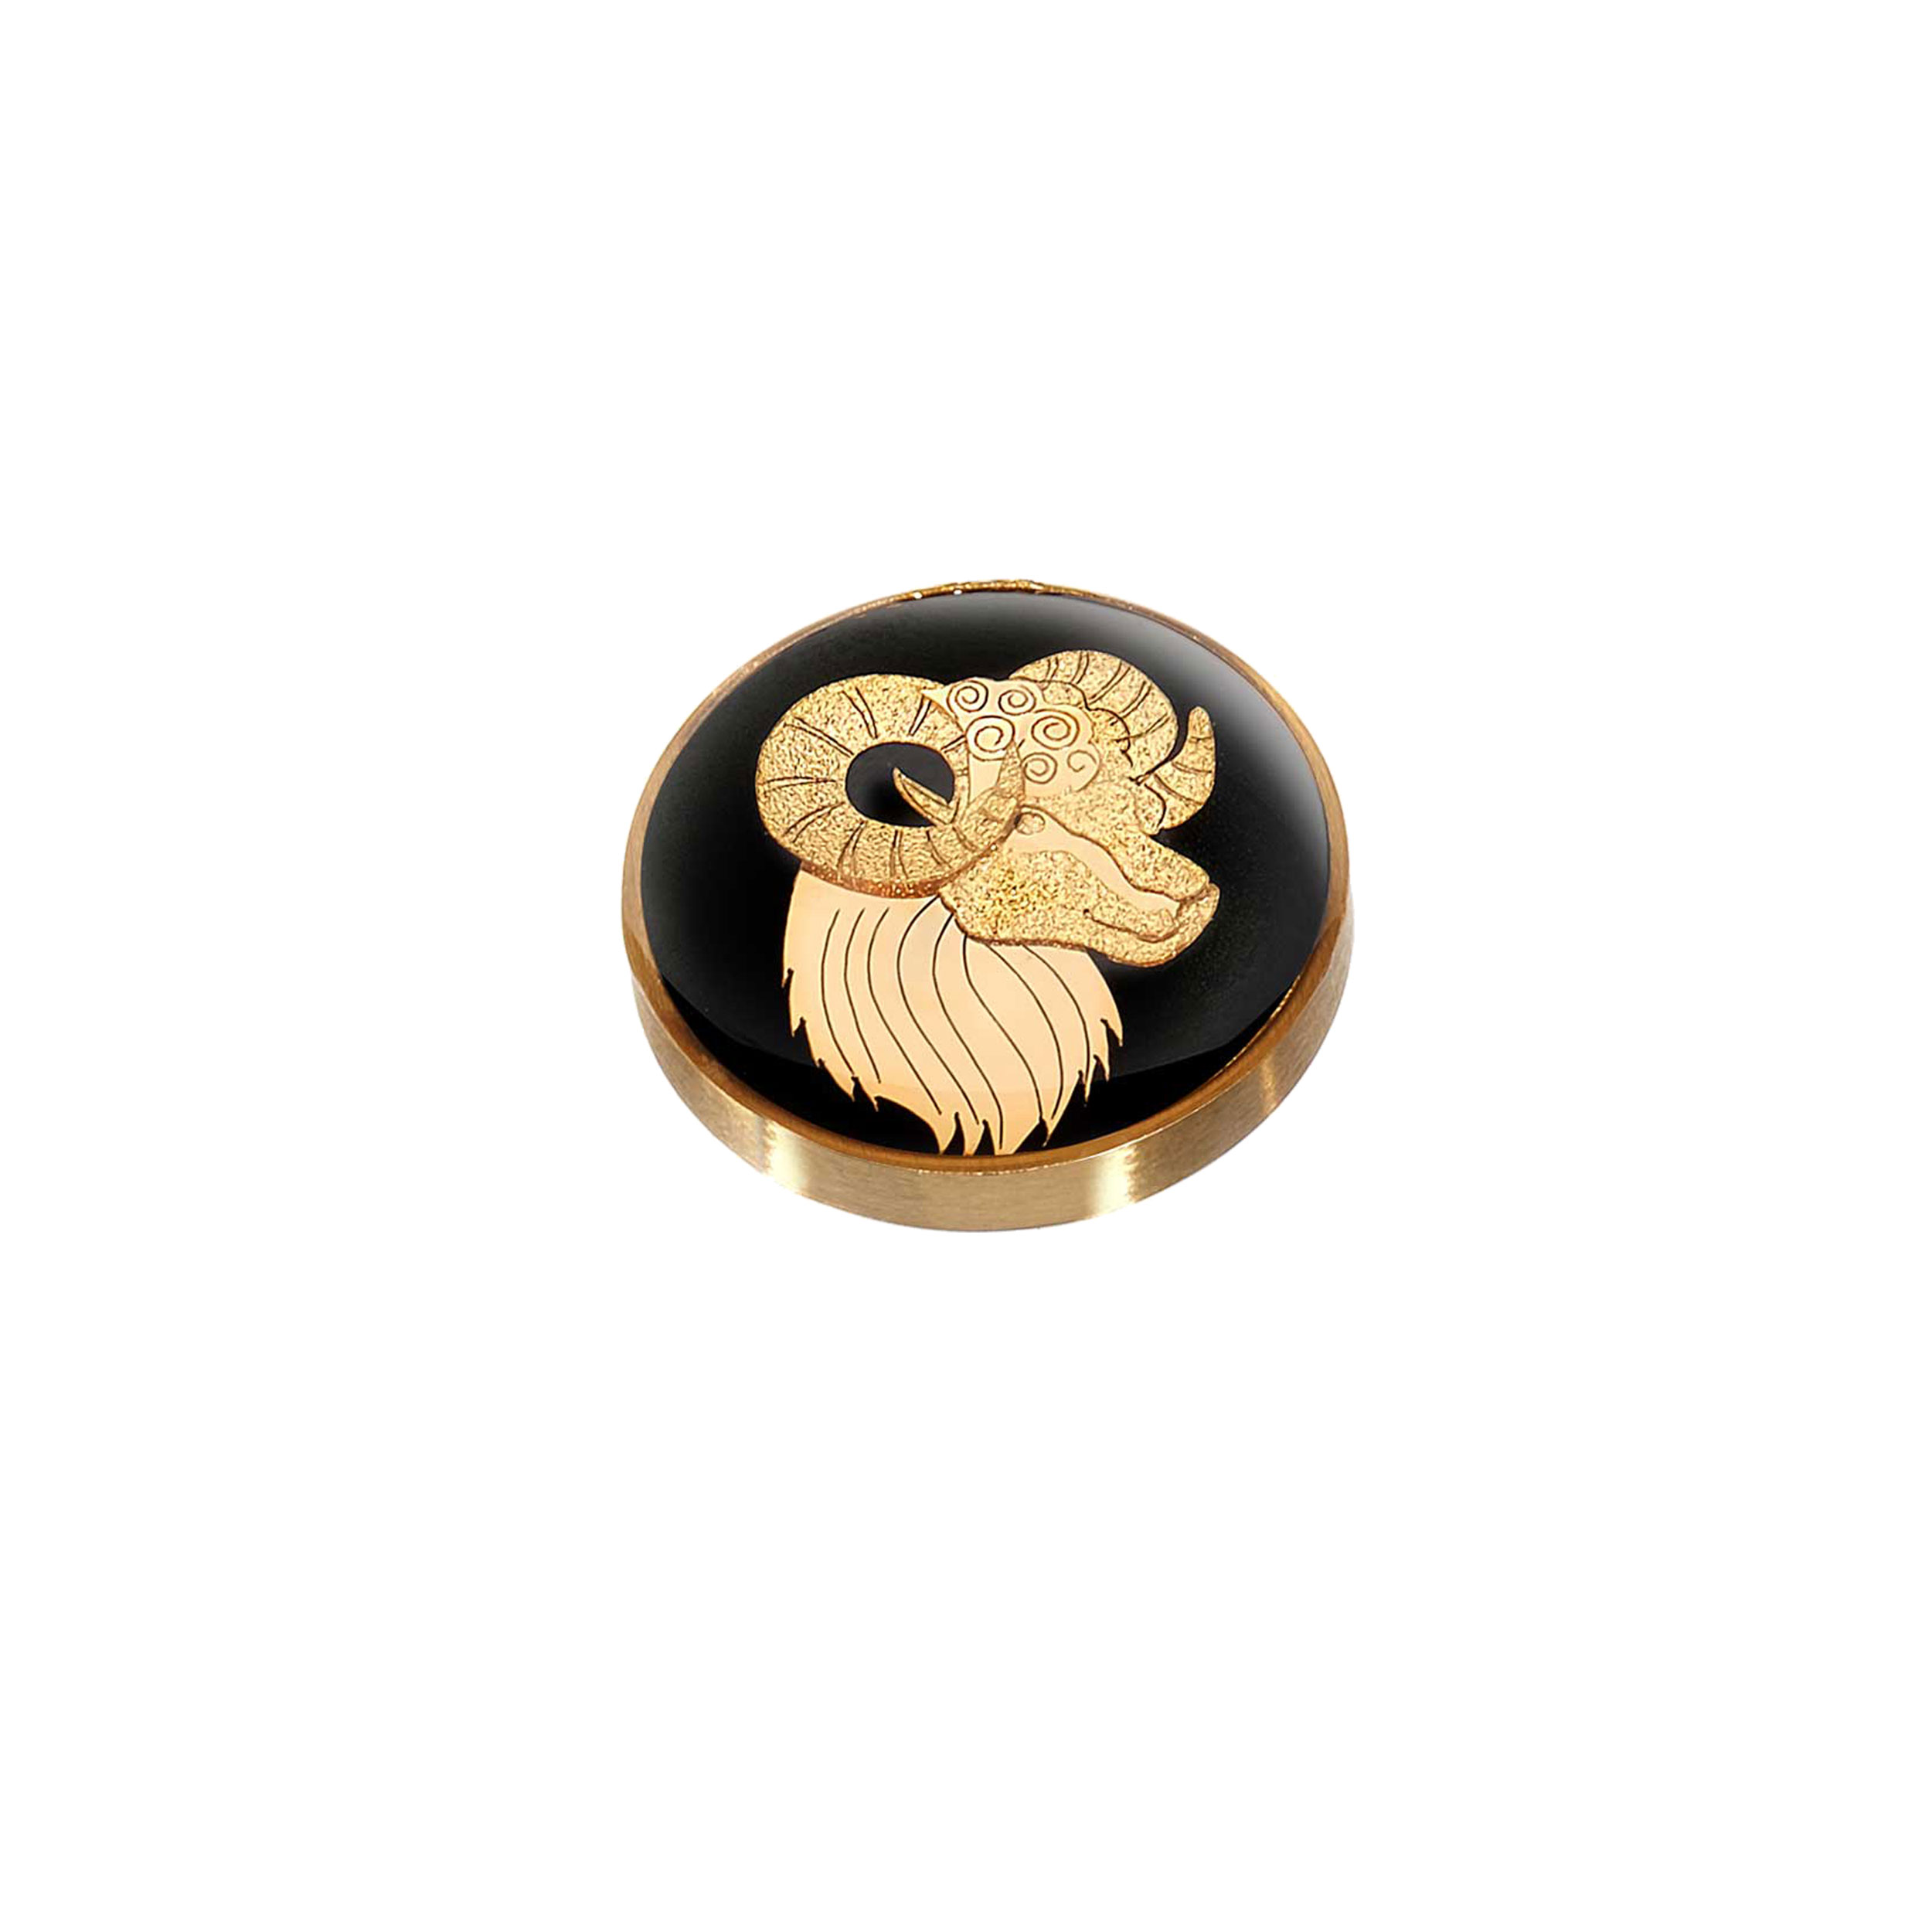 Steel chest badge and 24 carat gold leaf, lavender design, April